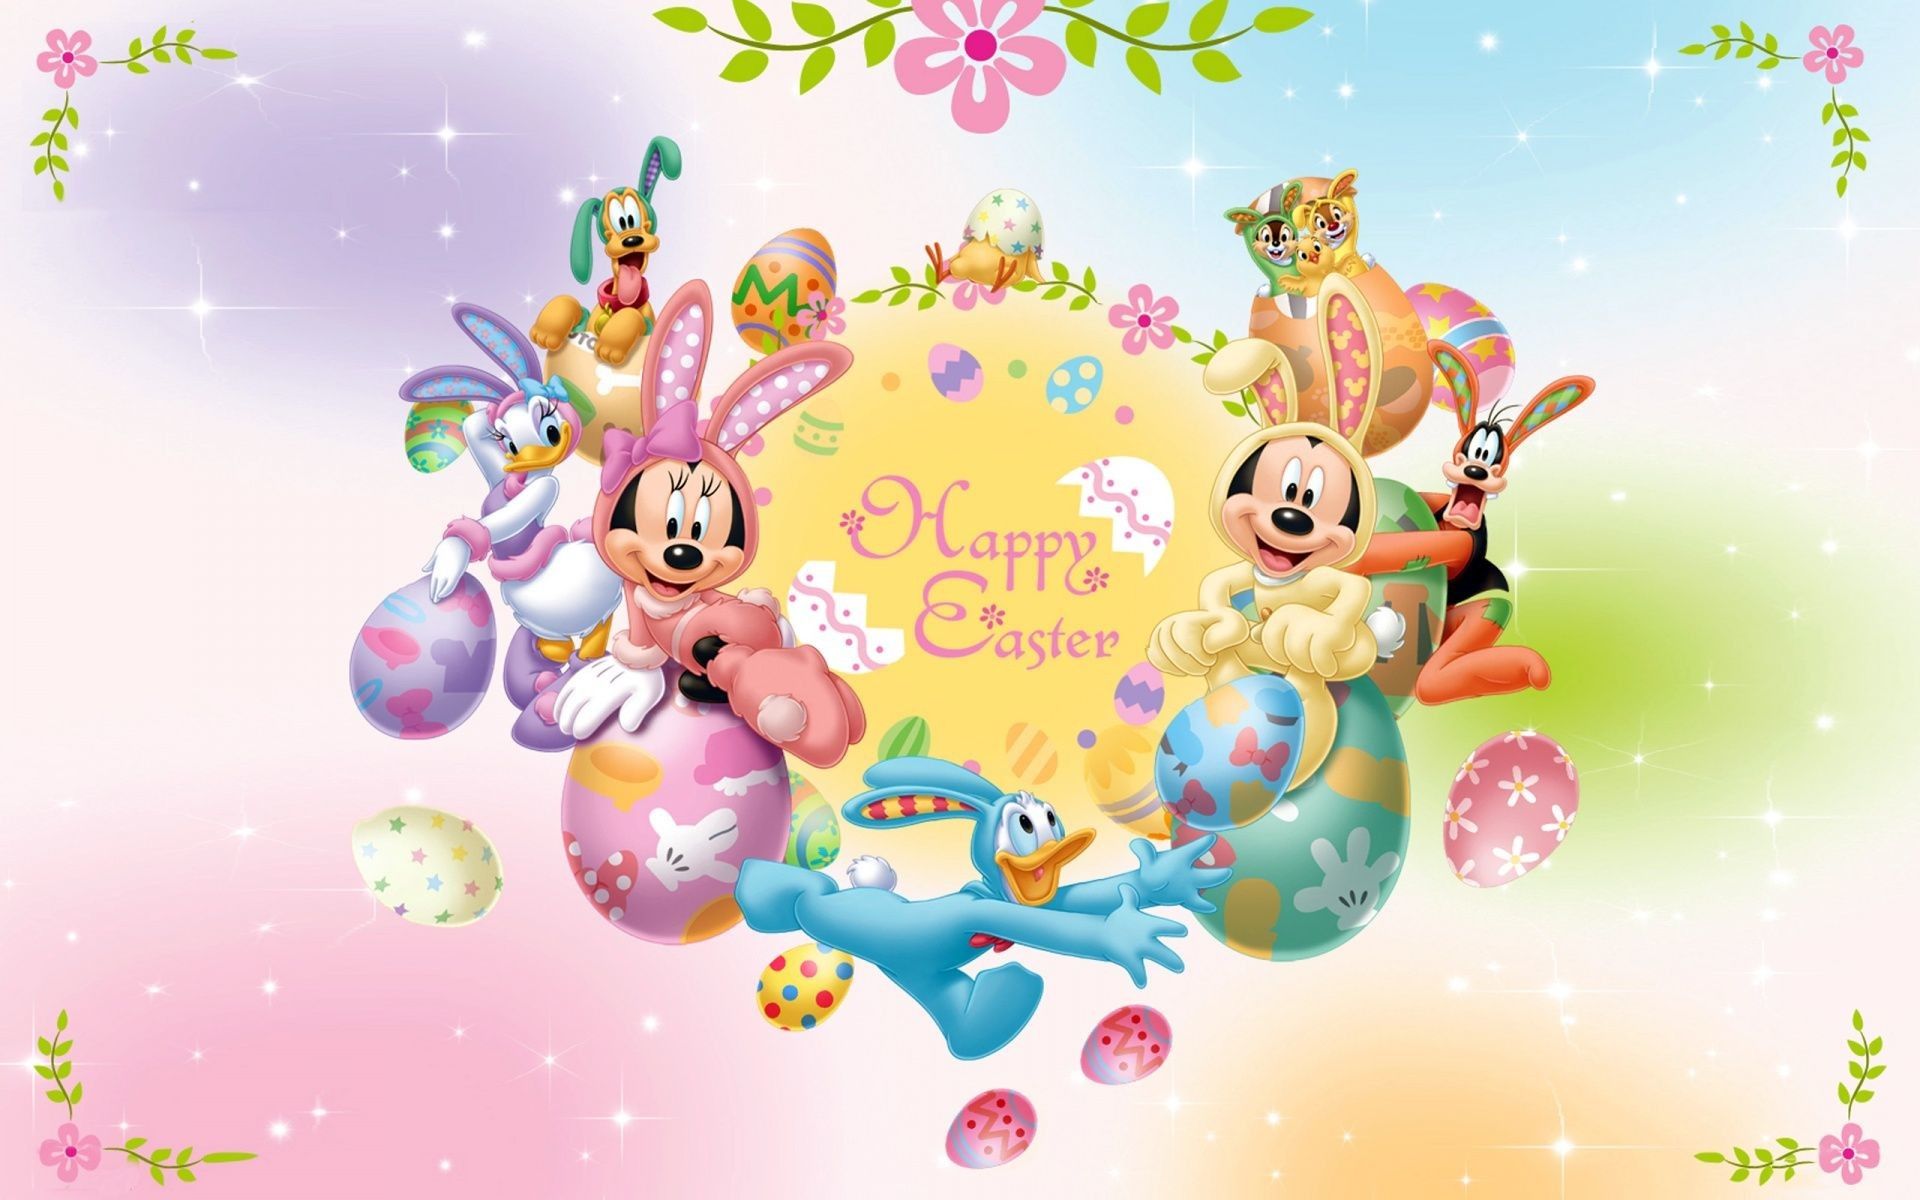 Disney Princess Easter Wallpaper